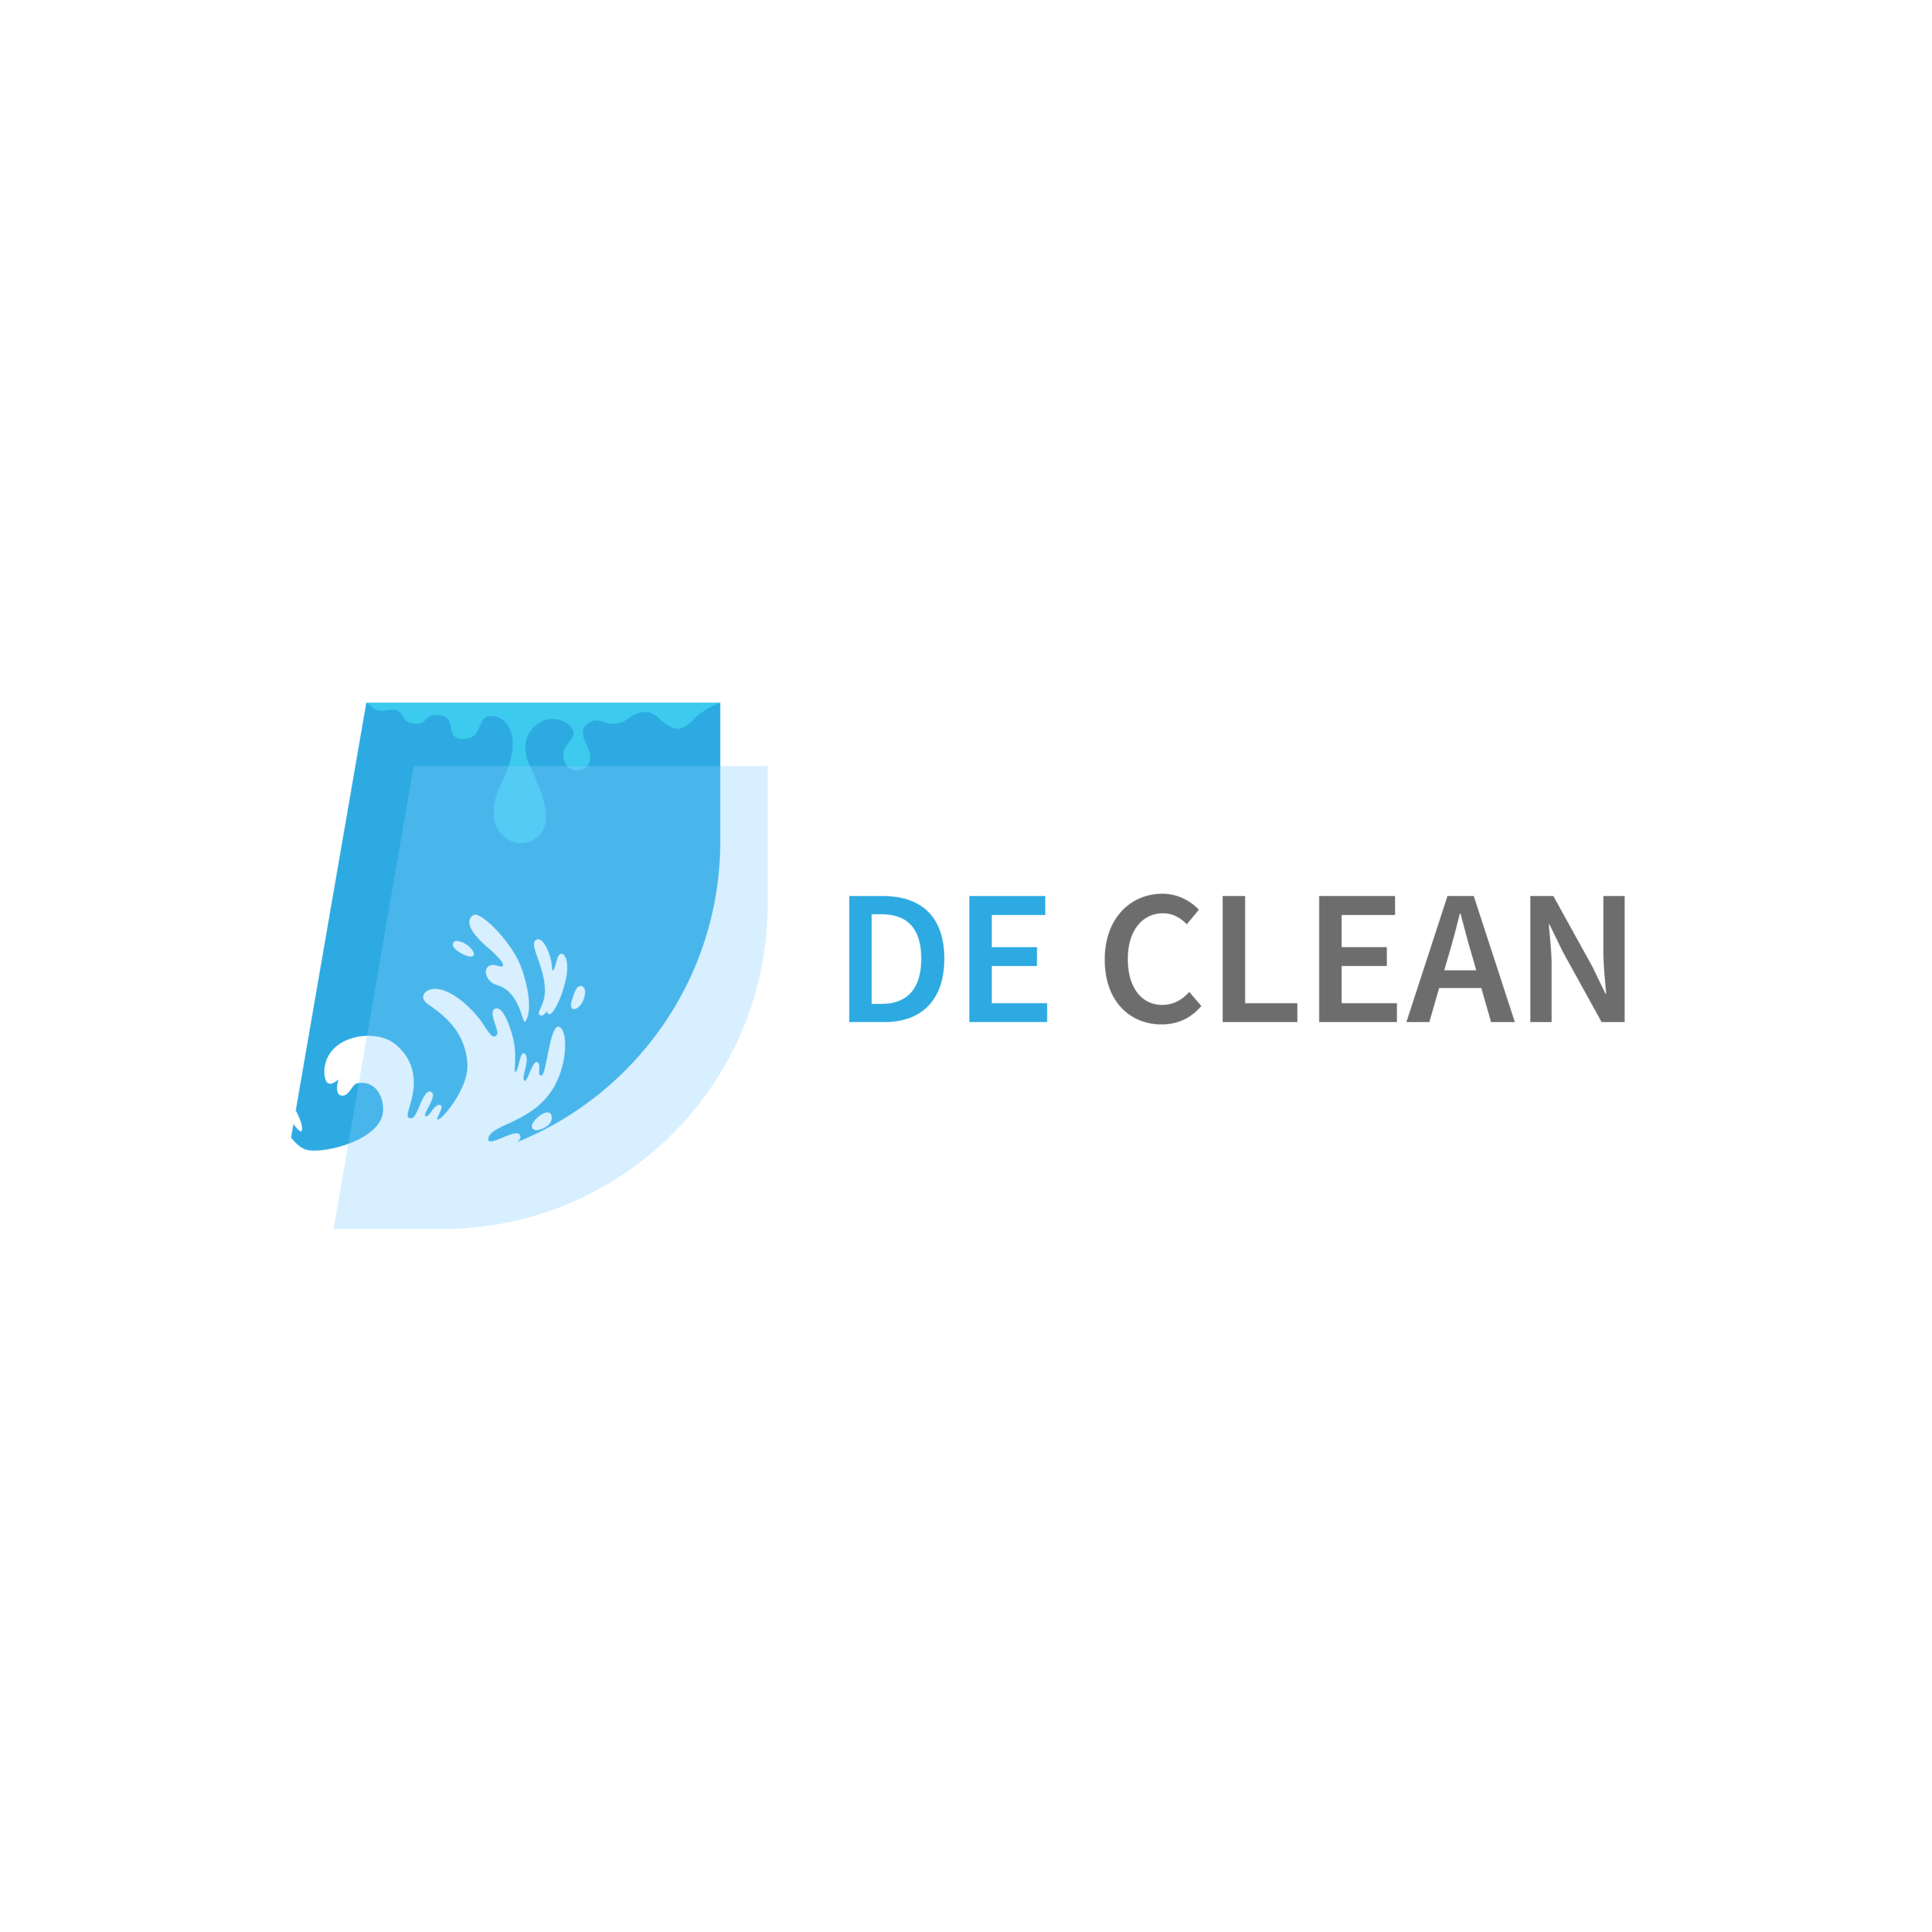 DE CLEAN logo - D Letter previews.